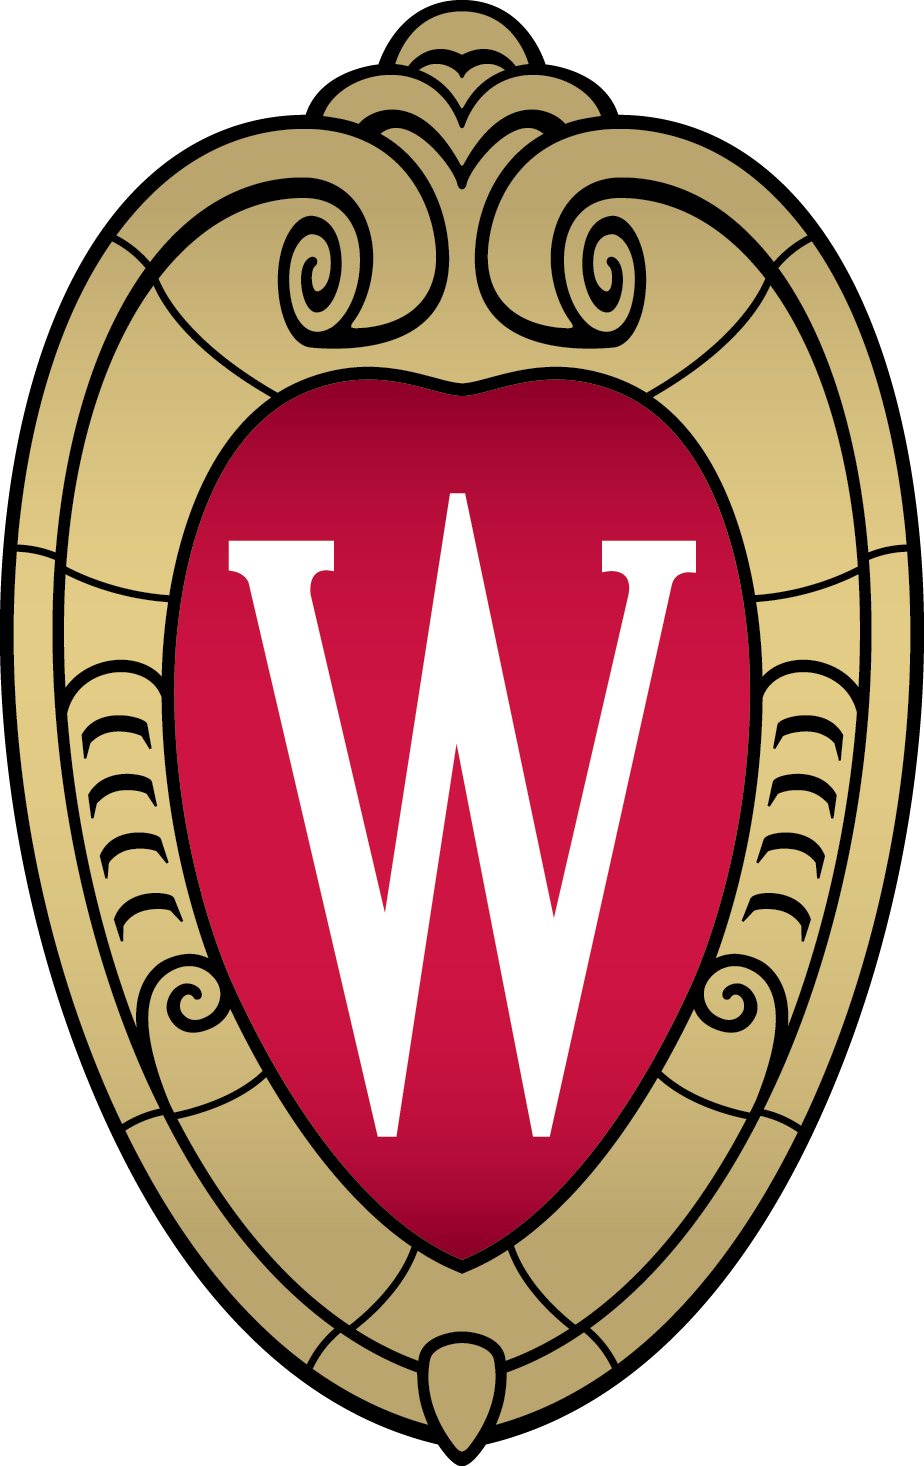 UW-Madison Logo - Uw madison Logos